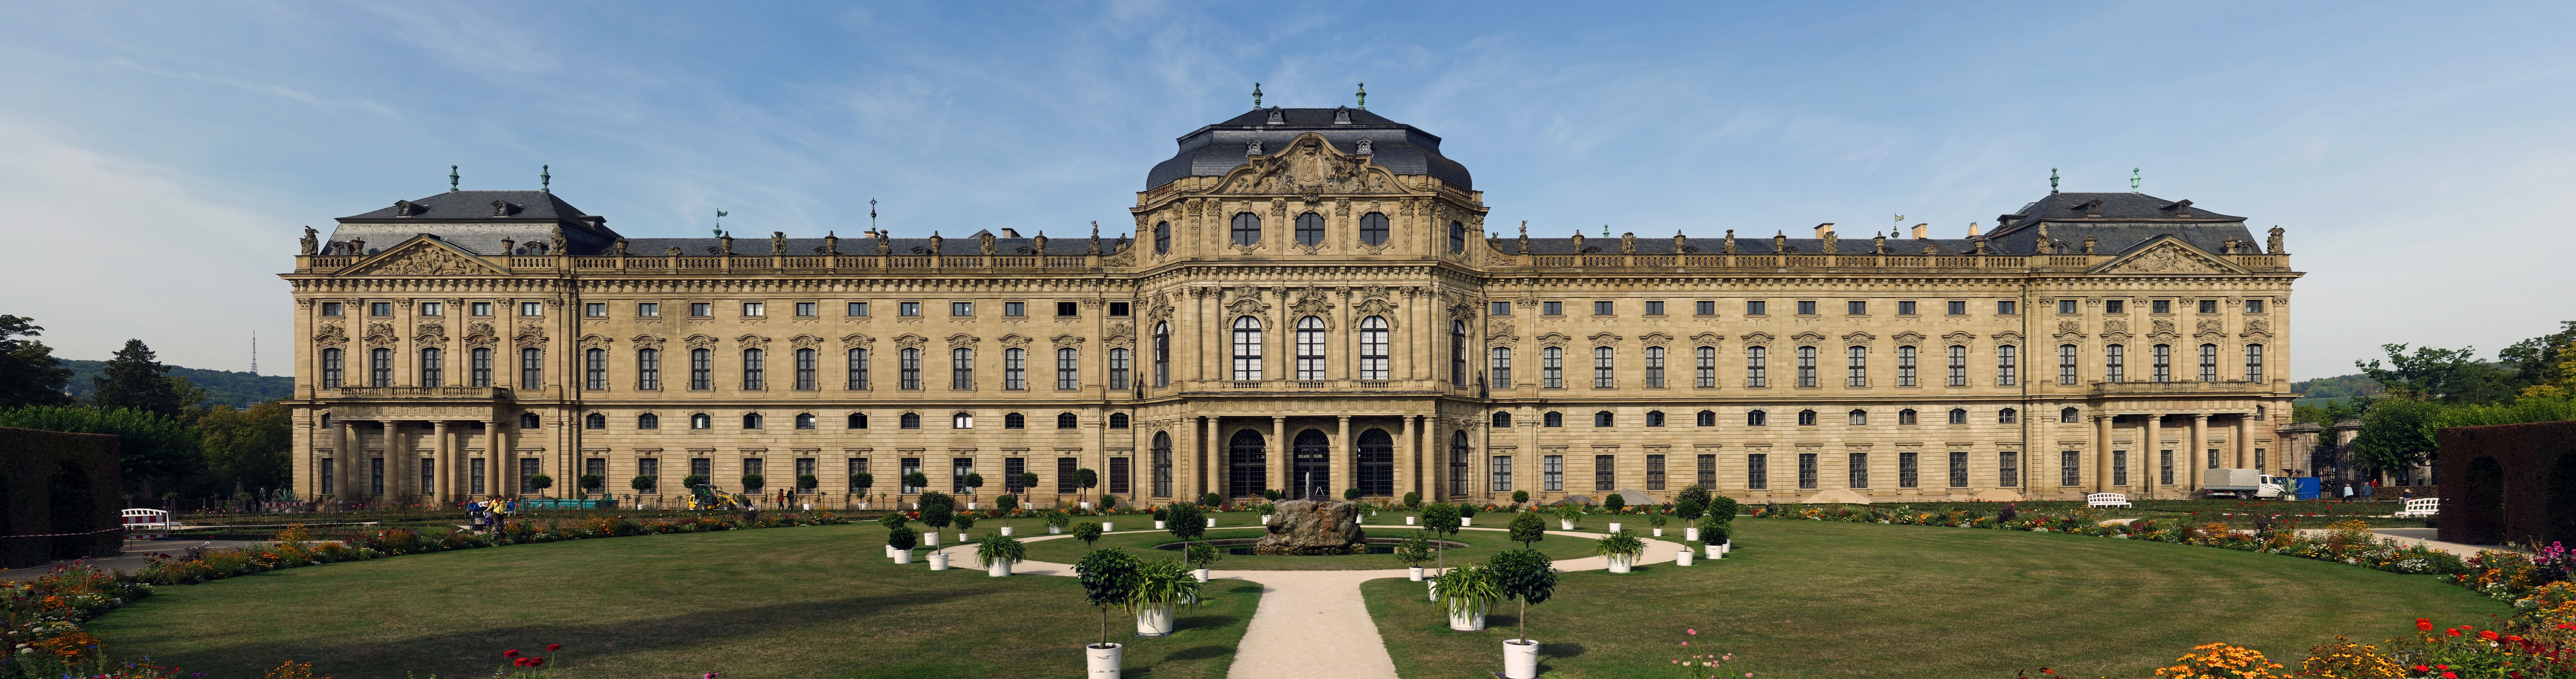 Würzburger Residenz – Gartenfront 168 m lang